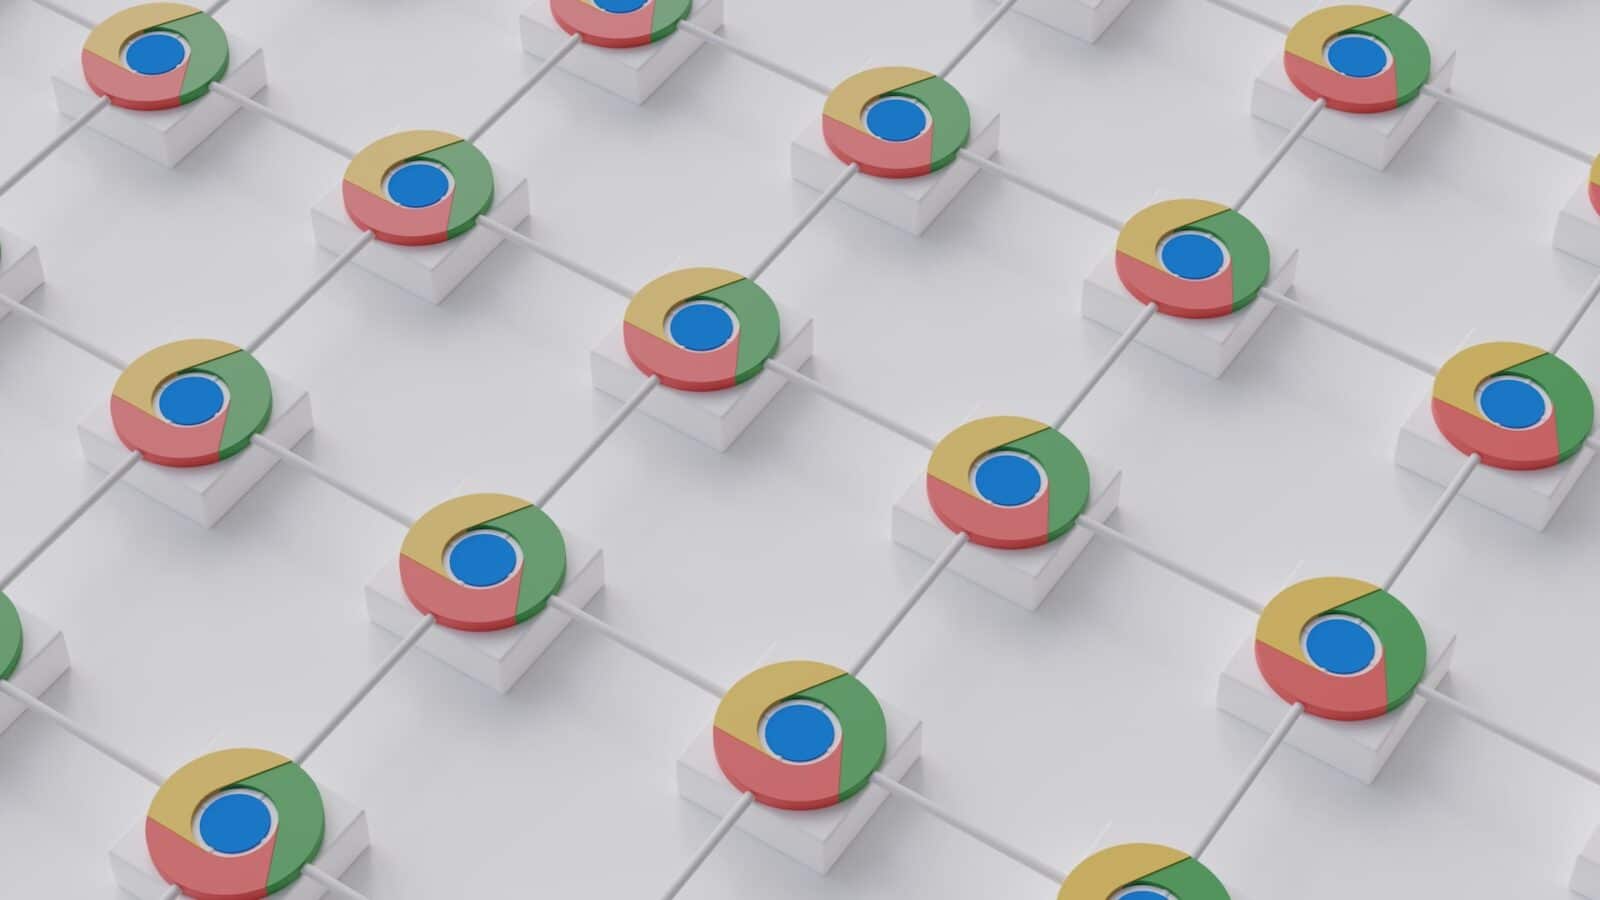 Google Chrome : mettez vite à jour le navigateur, une faille critique vient d’être corrigée chrome